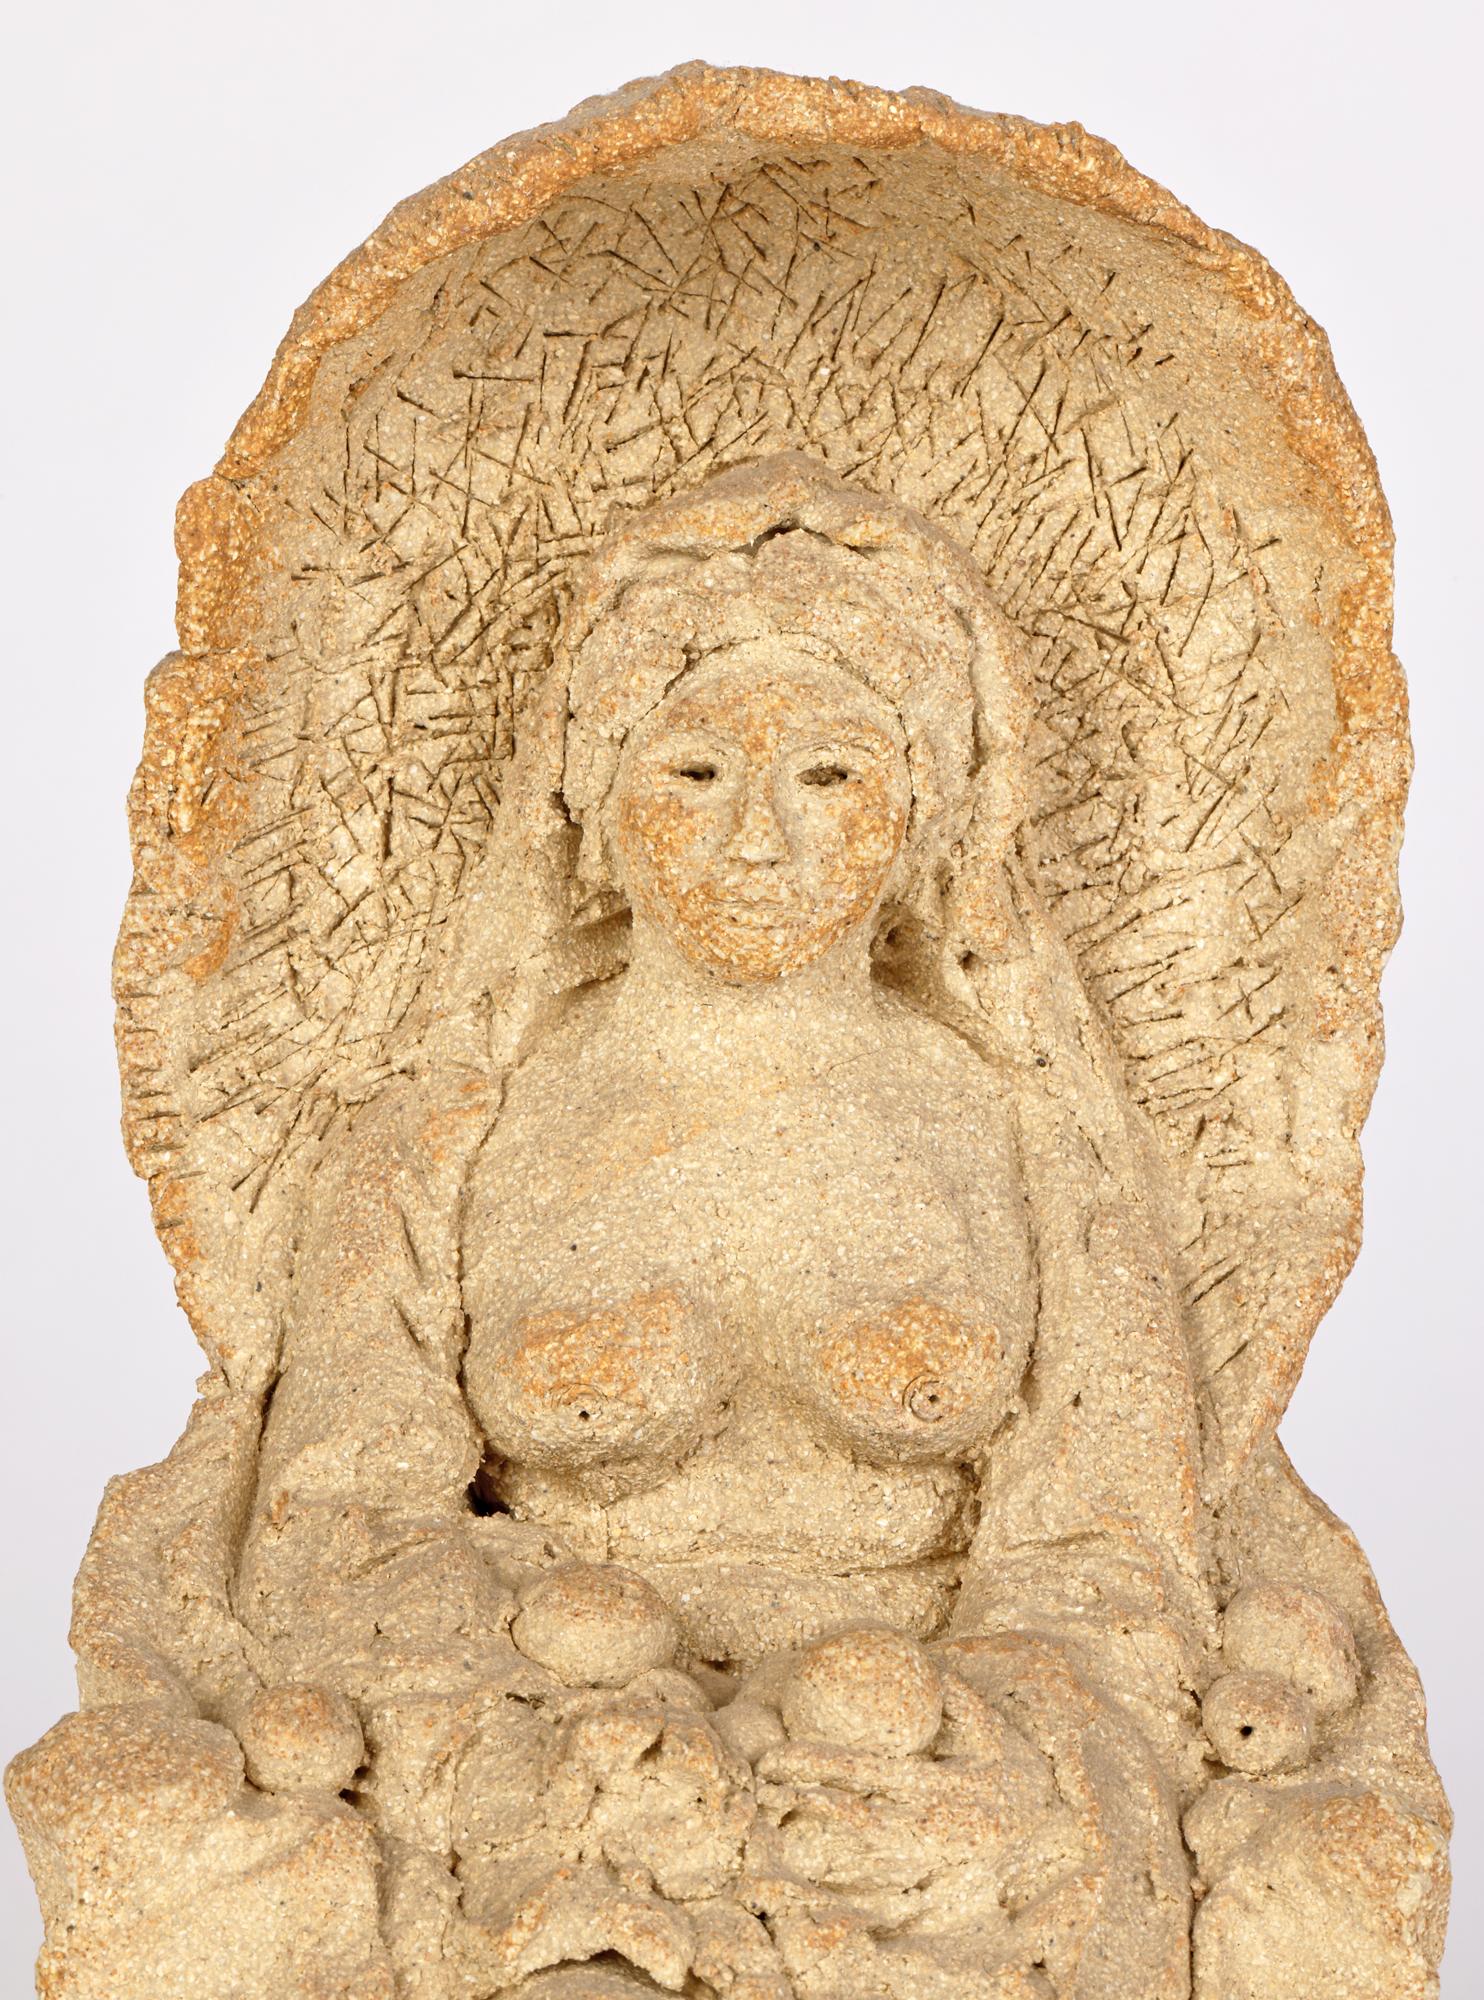 Sculpture artisanale en grès du milieu du siècle représentant un nu avec des fruits assis dans une tonnelle, attribuée à l'artiste et écrivain renommé Quentin Bell (britannique, 1910-1996). La figurine en grès est très travaillée et représente la